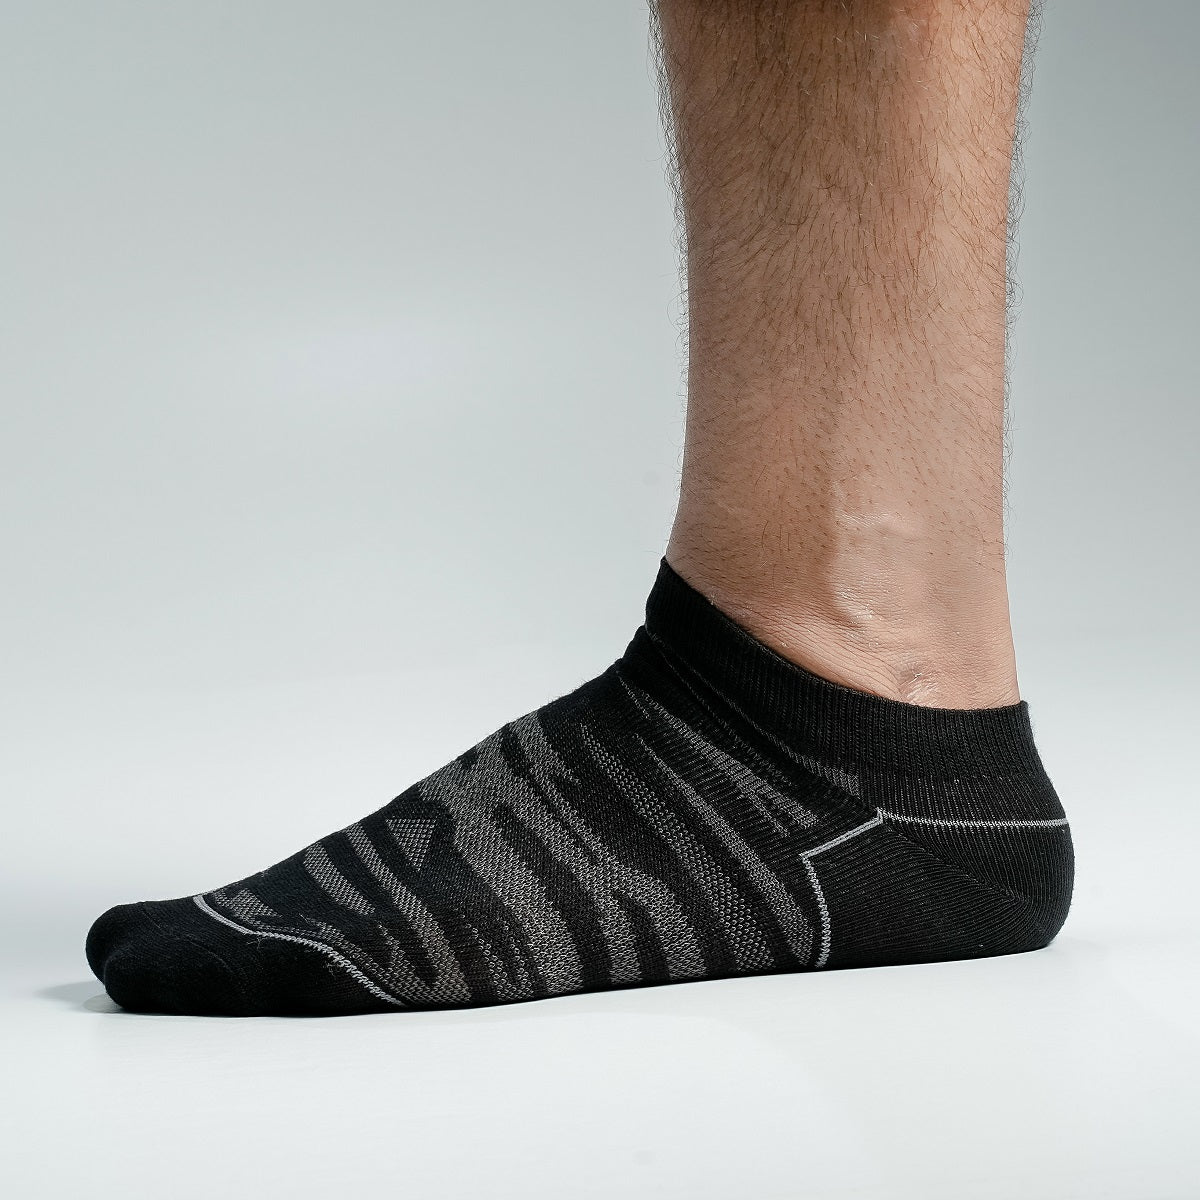 Kmalion Ankle socks for Men By MB Hosiery